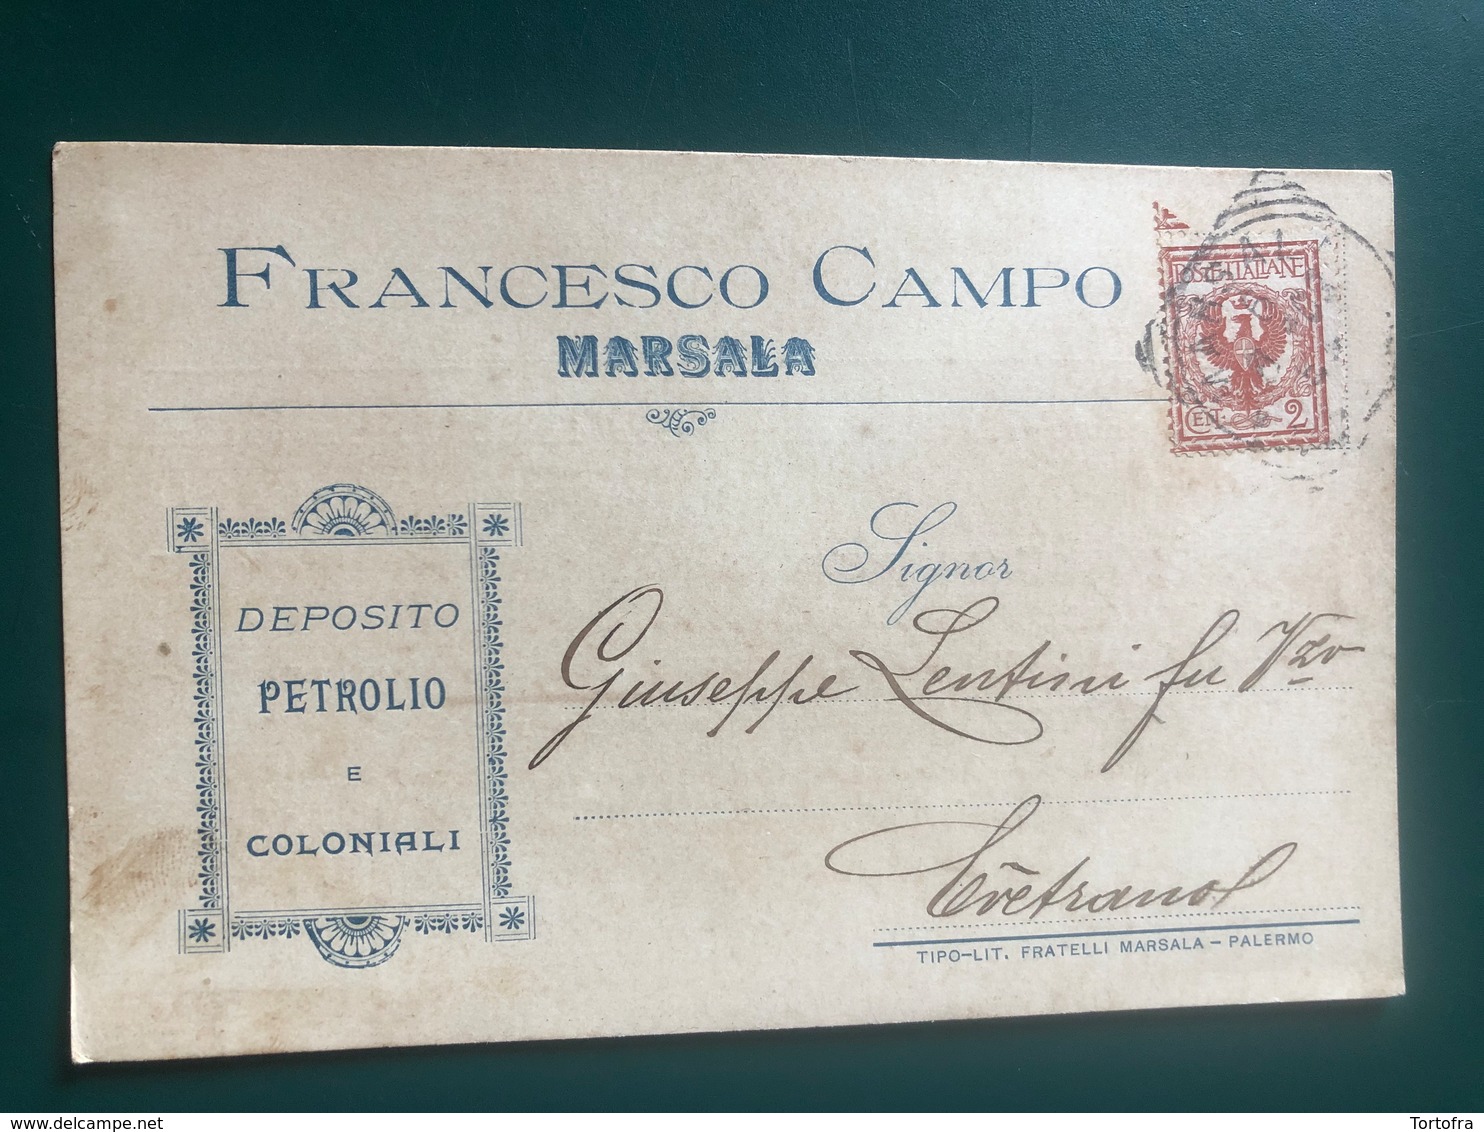 MARSALA (TRAPANI) FRANCESCO CAMPO DEPOSITO PETROLIO E COLONIALI 1903 - Marsala